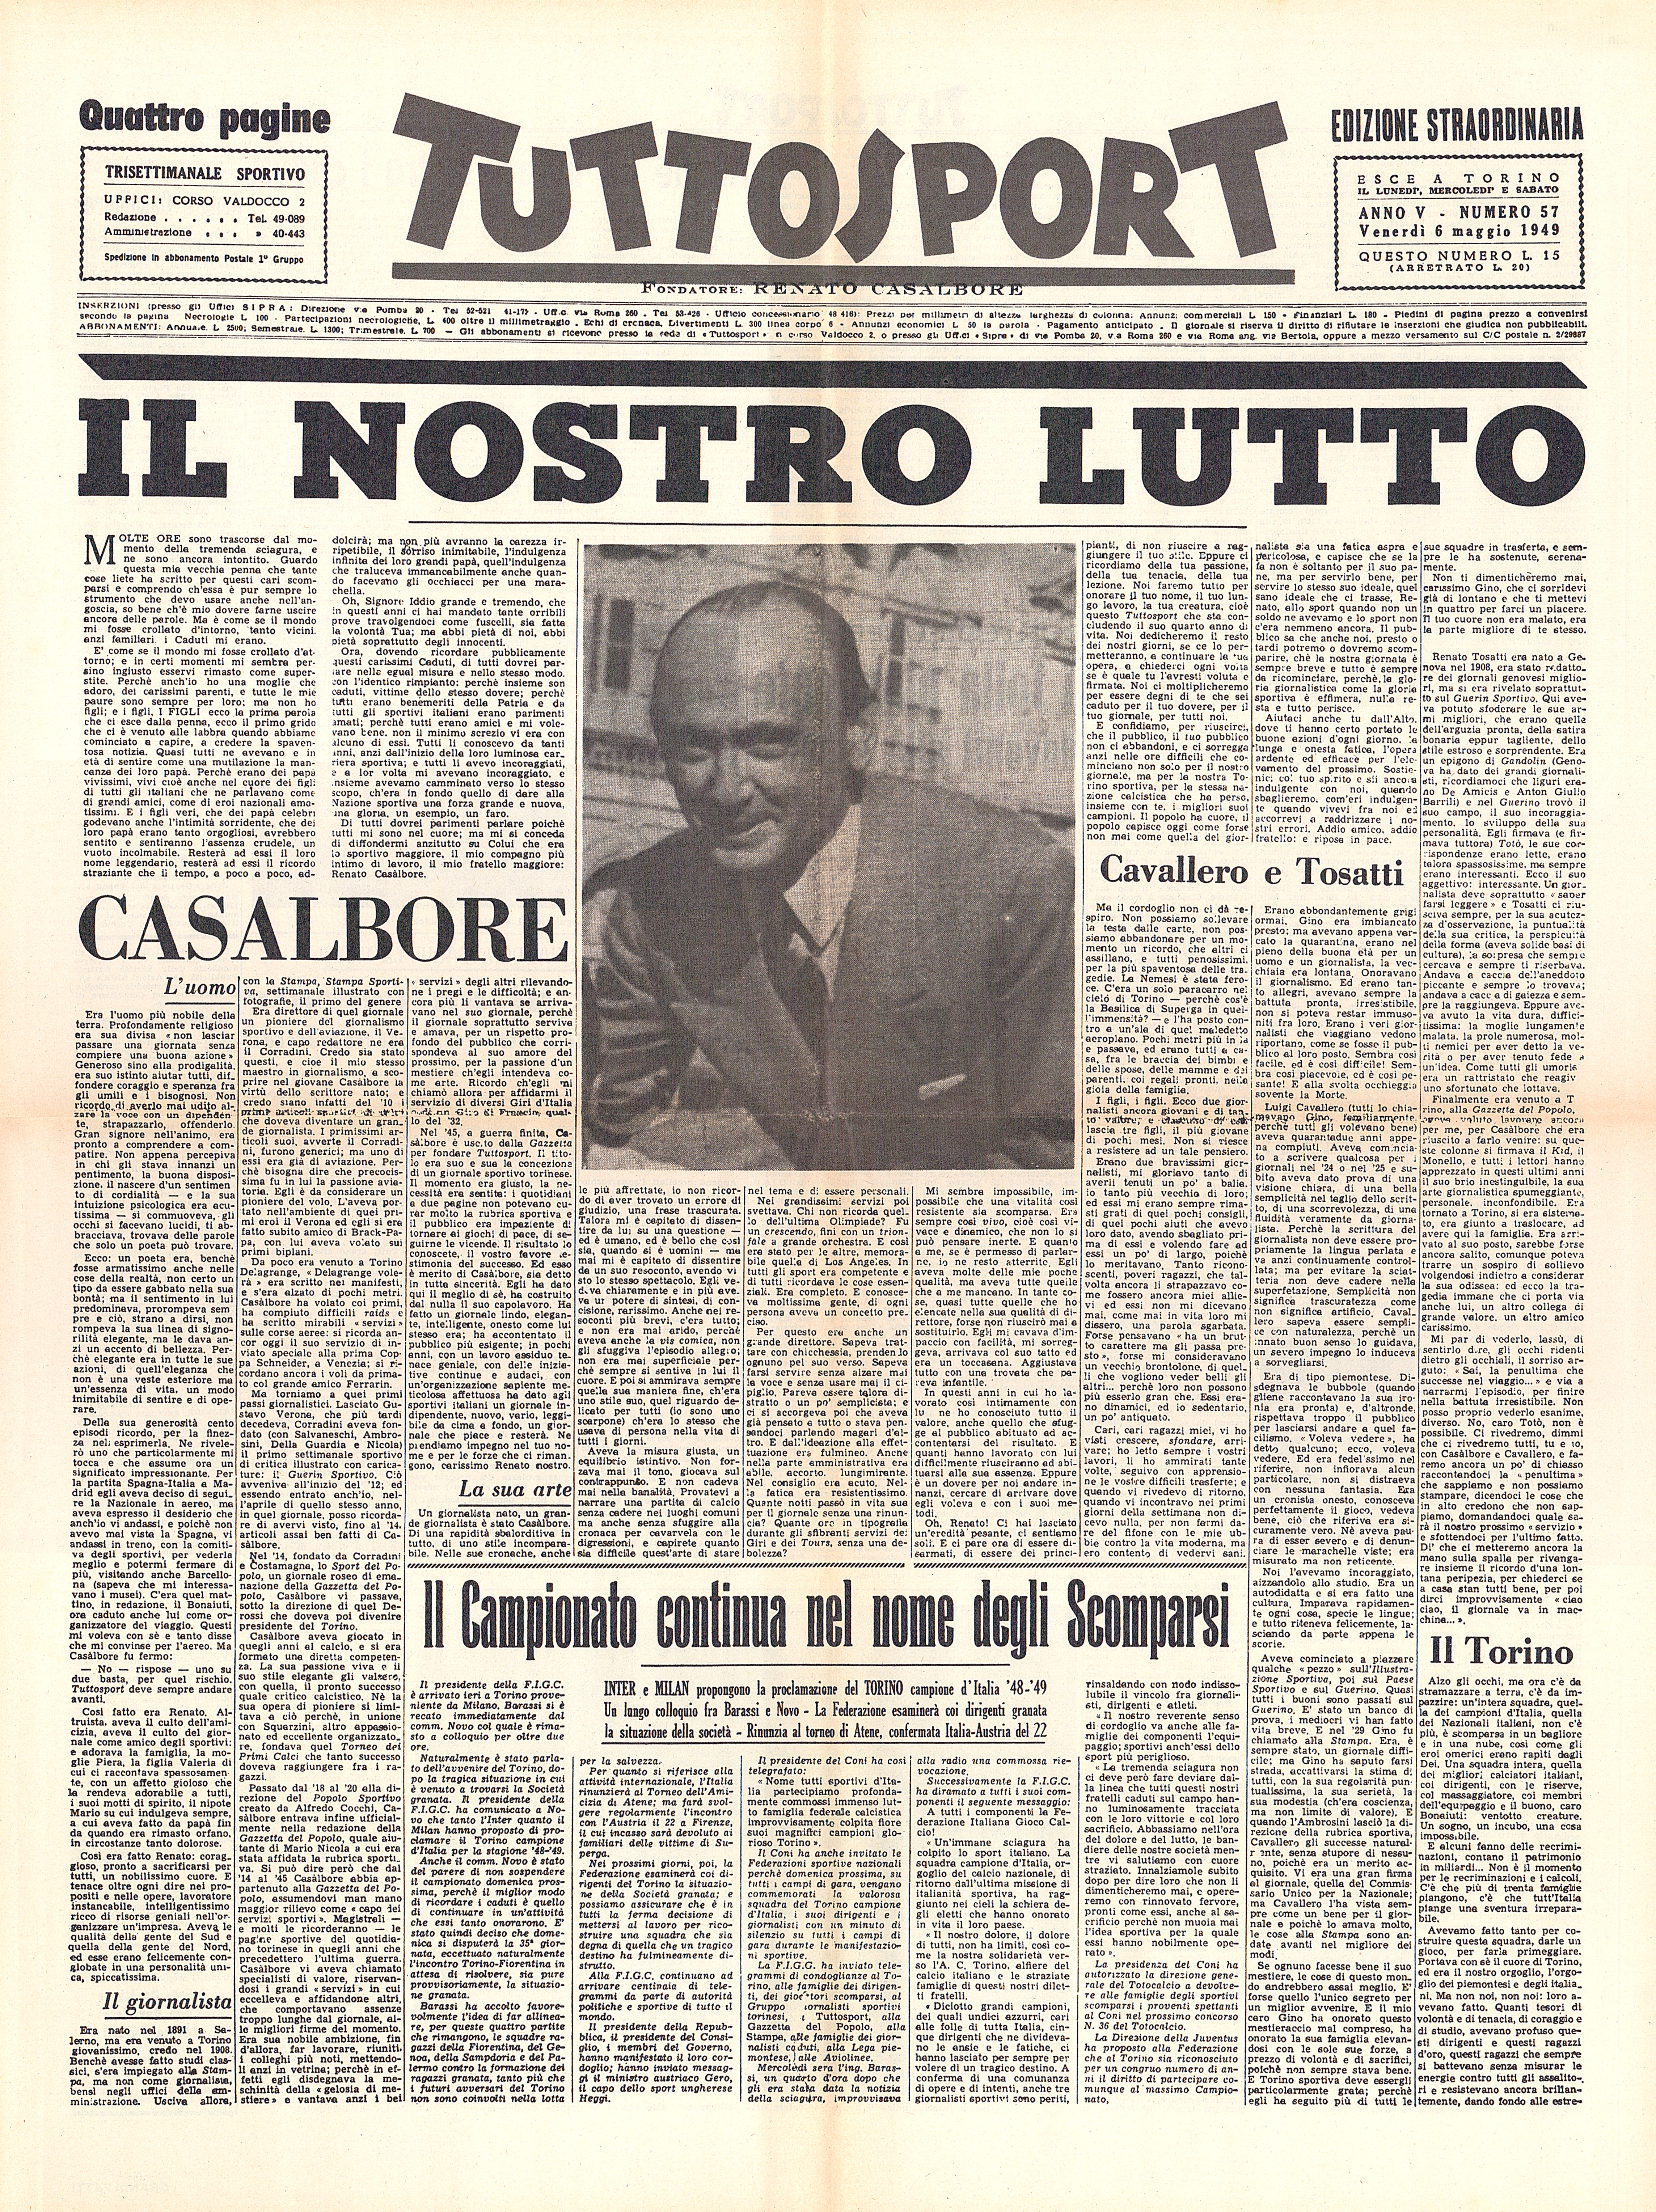 Prima pagina di "Tuttosport", che ricorda il fondatore del quotidiano, Renato Casalbore, morto nella tragedia anche lui